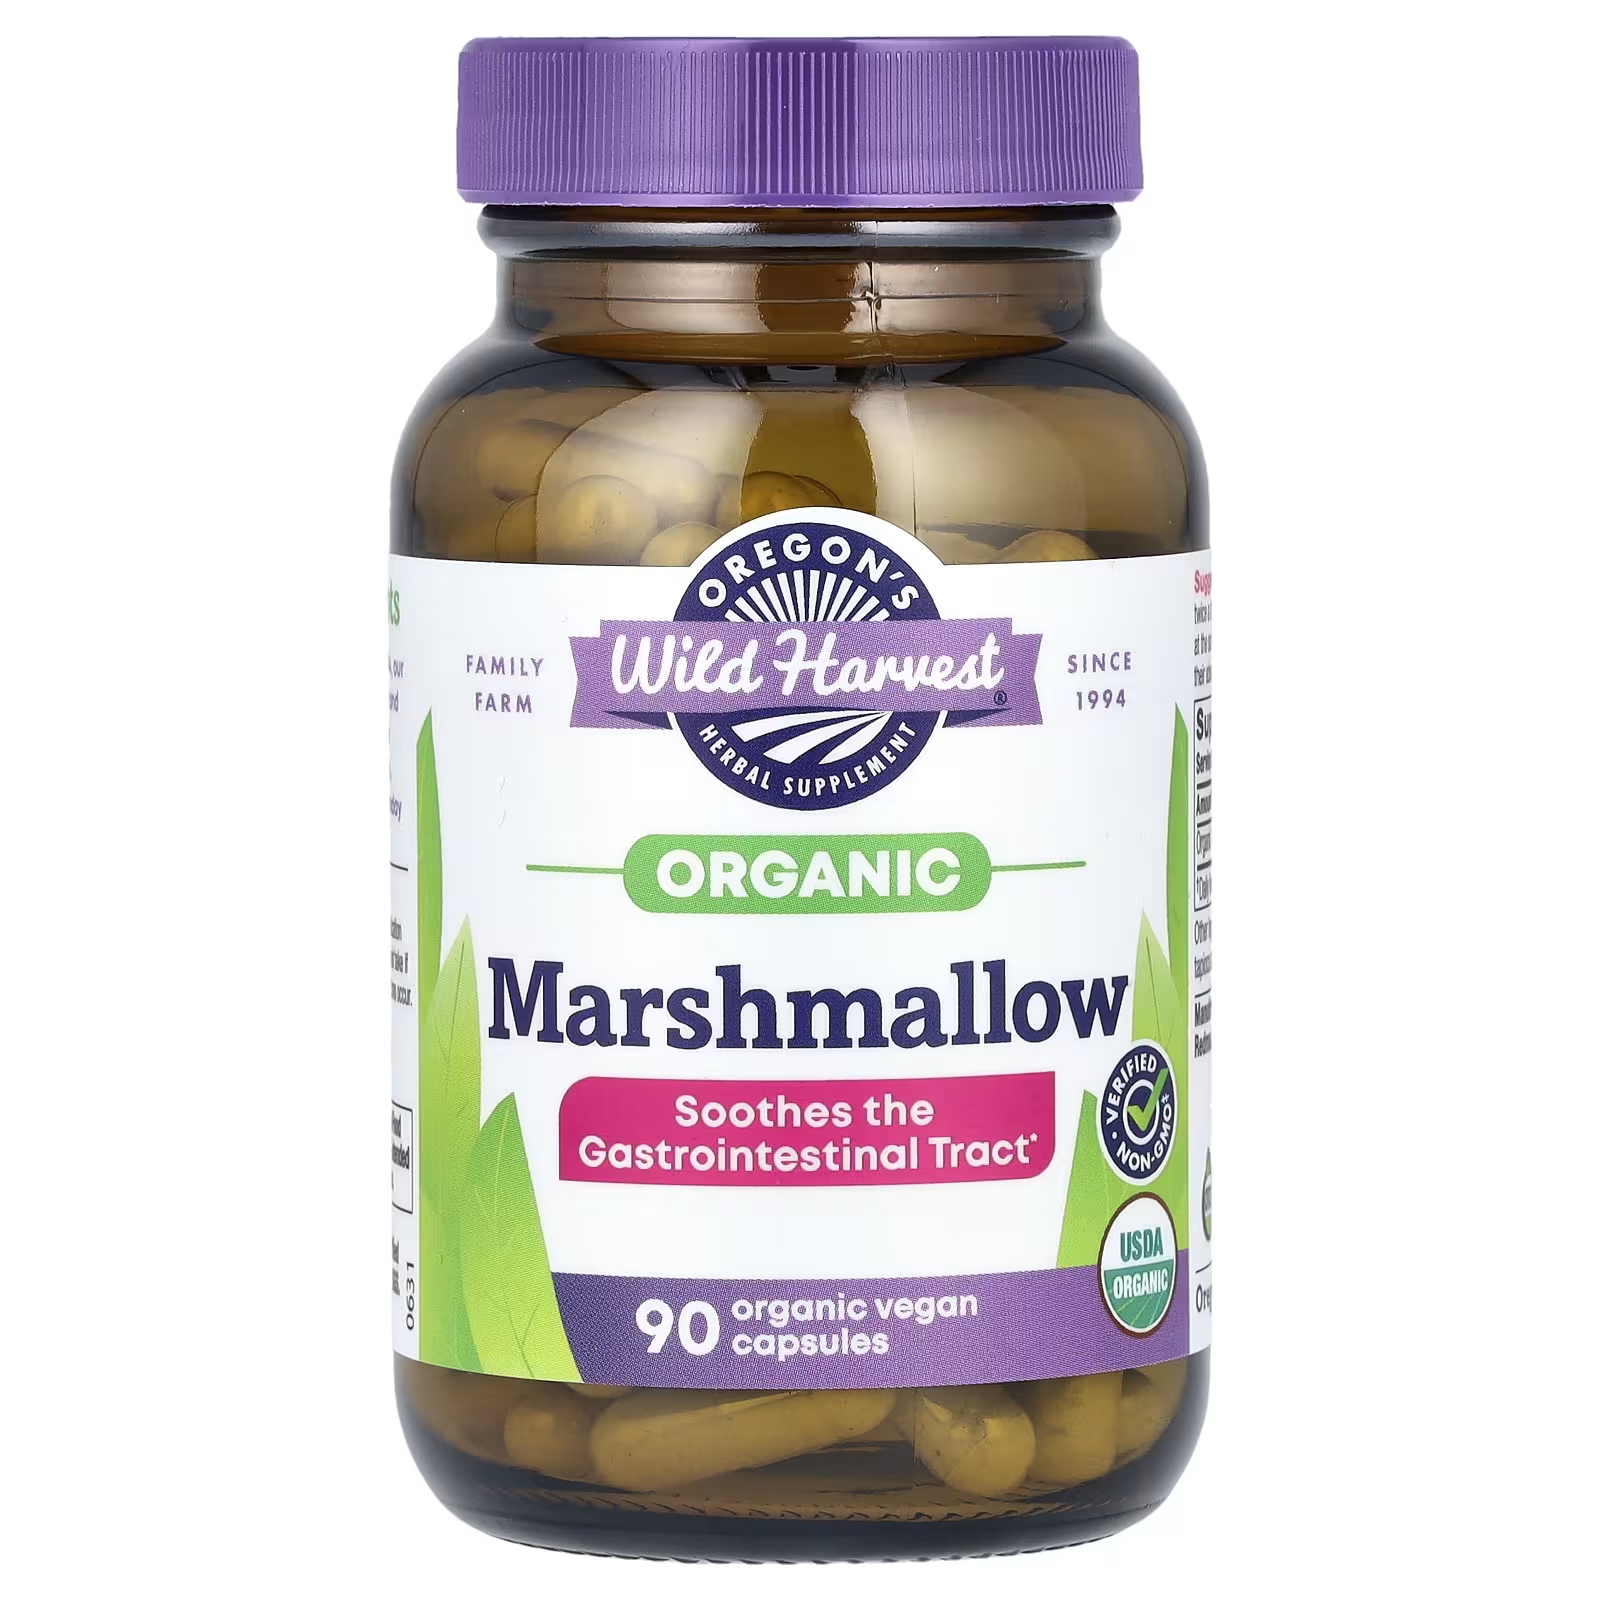 Травяная добавка Oregons Wild Harvest Organic Marshmallow, 90 органических веганских капсул брамбс ханс юрген лучевая диагностика желудочно кишечный тракт